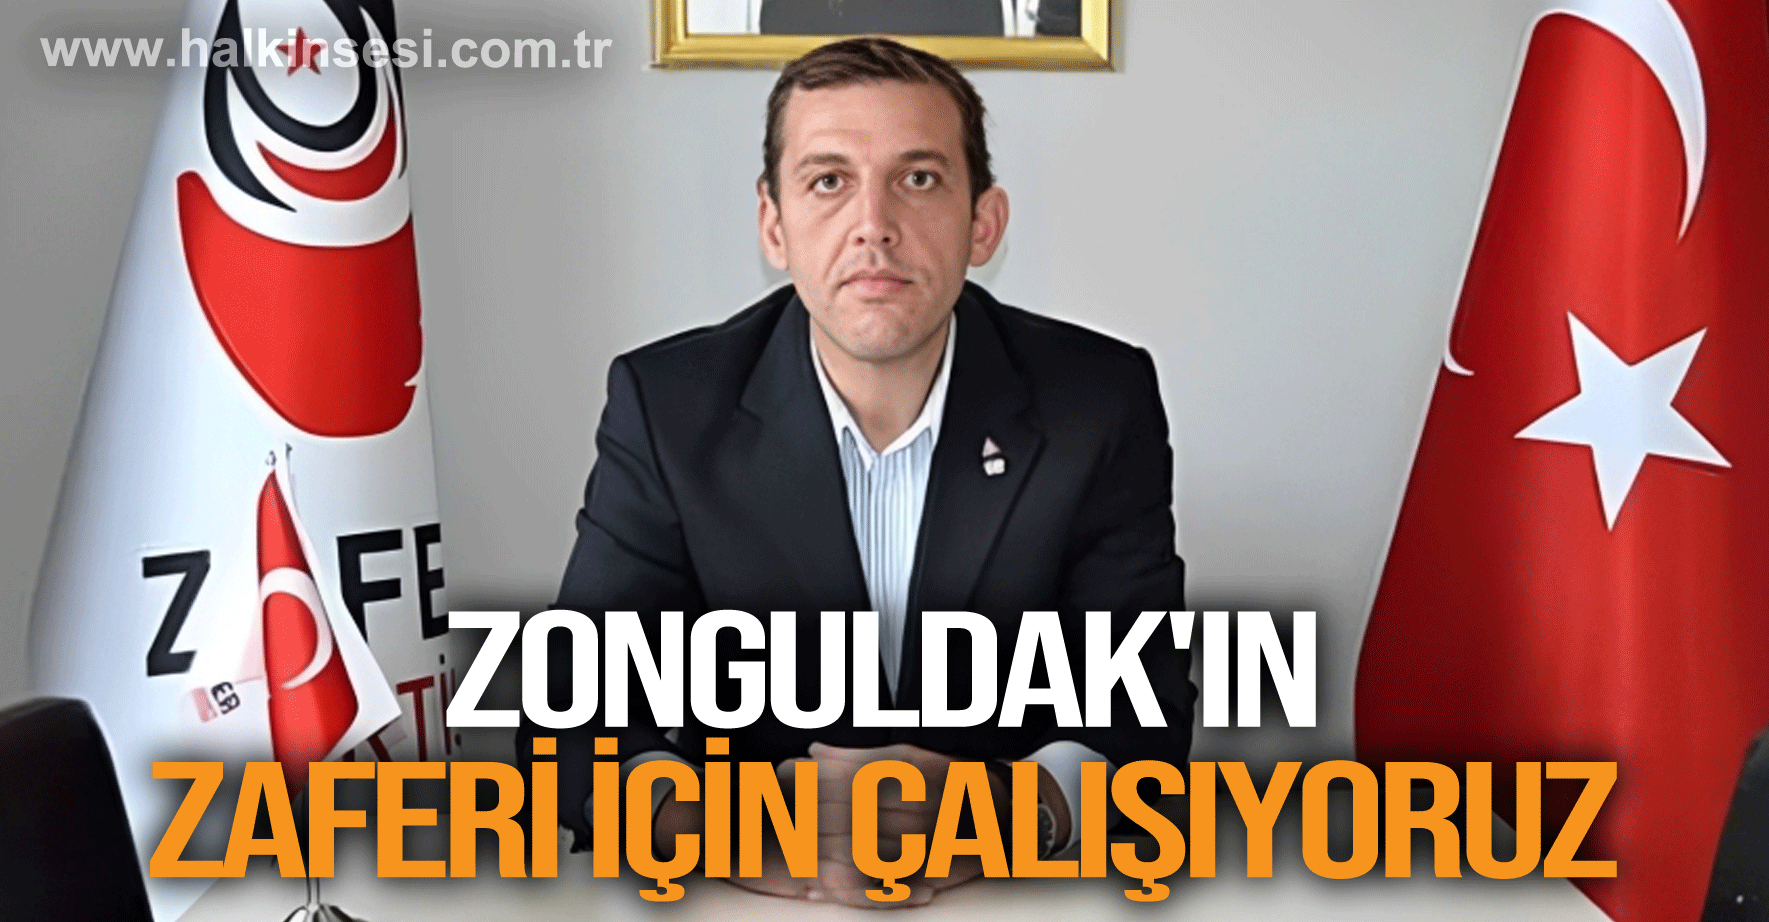 "Zonguldak'ın zaferi için çalışıyoruz"